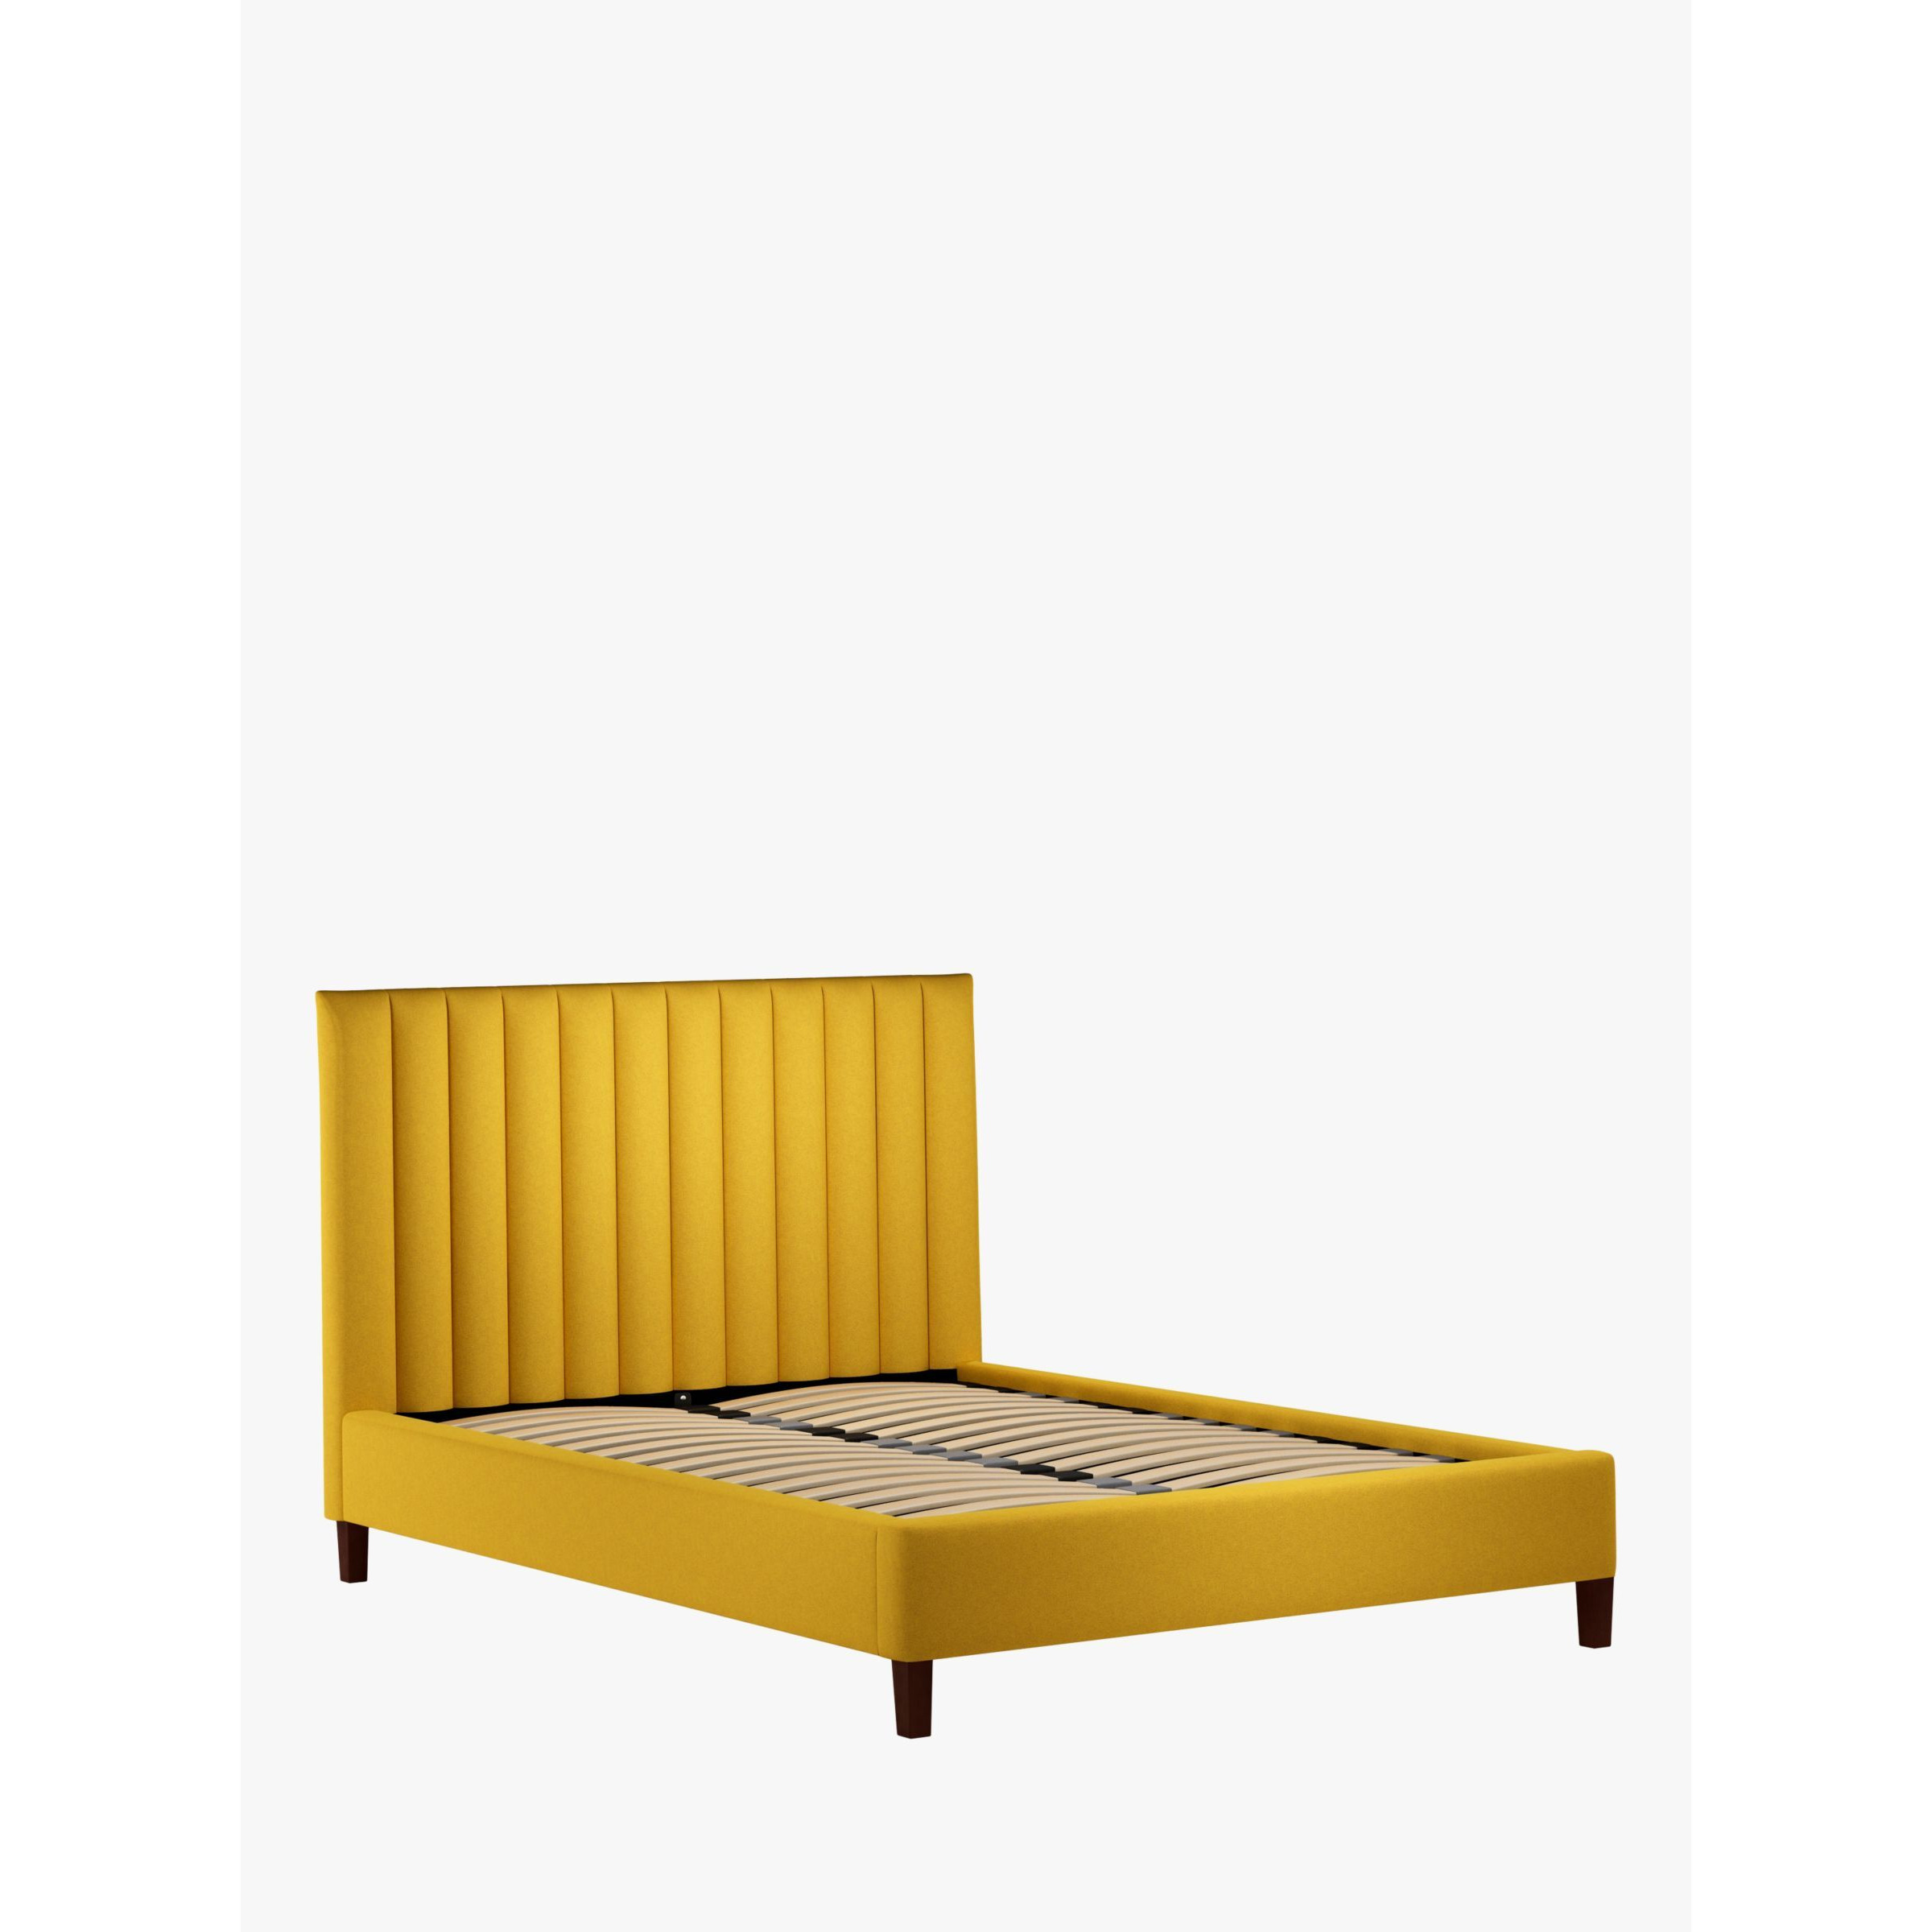 John Lewis Fluted Upholstered Bed Frame, King Size - image 1